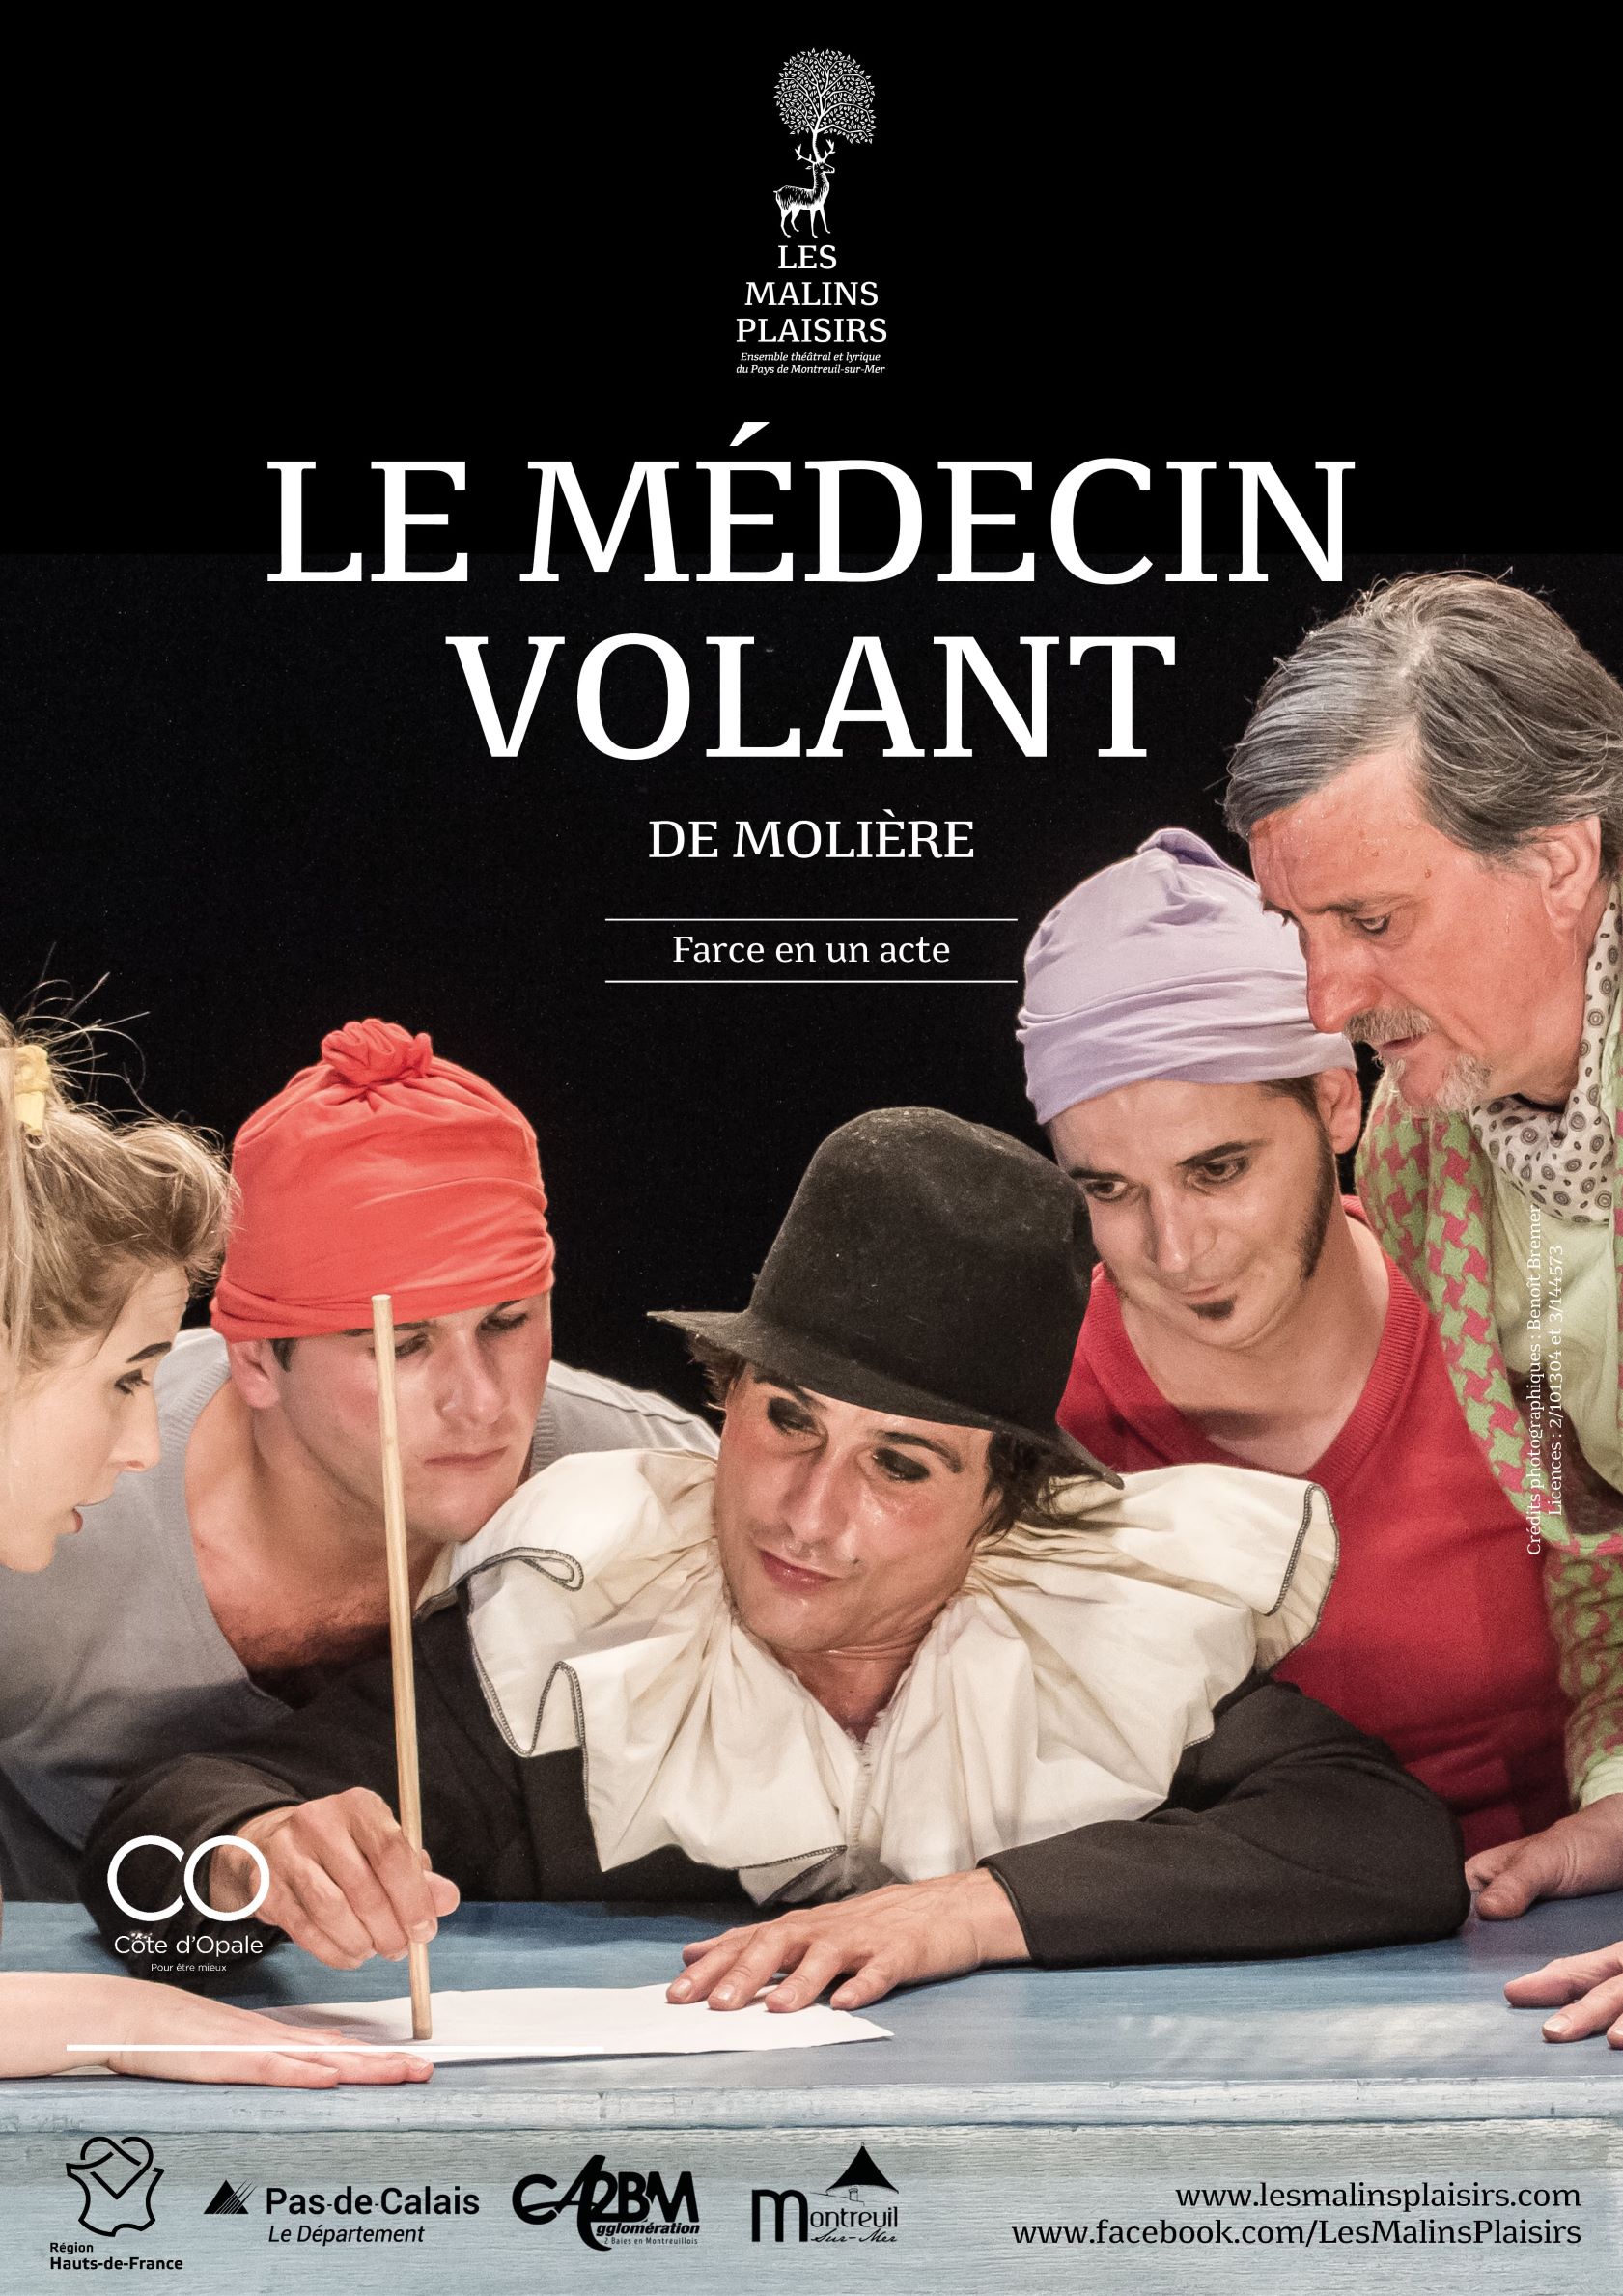 Affiche de la pièce de théâtre du médecin Volant représentant 4 personnages de la pièce